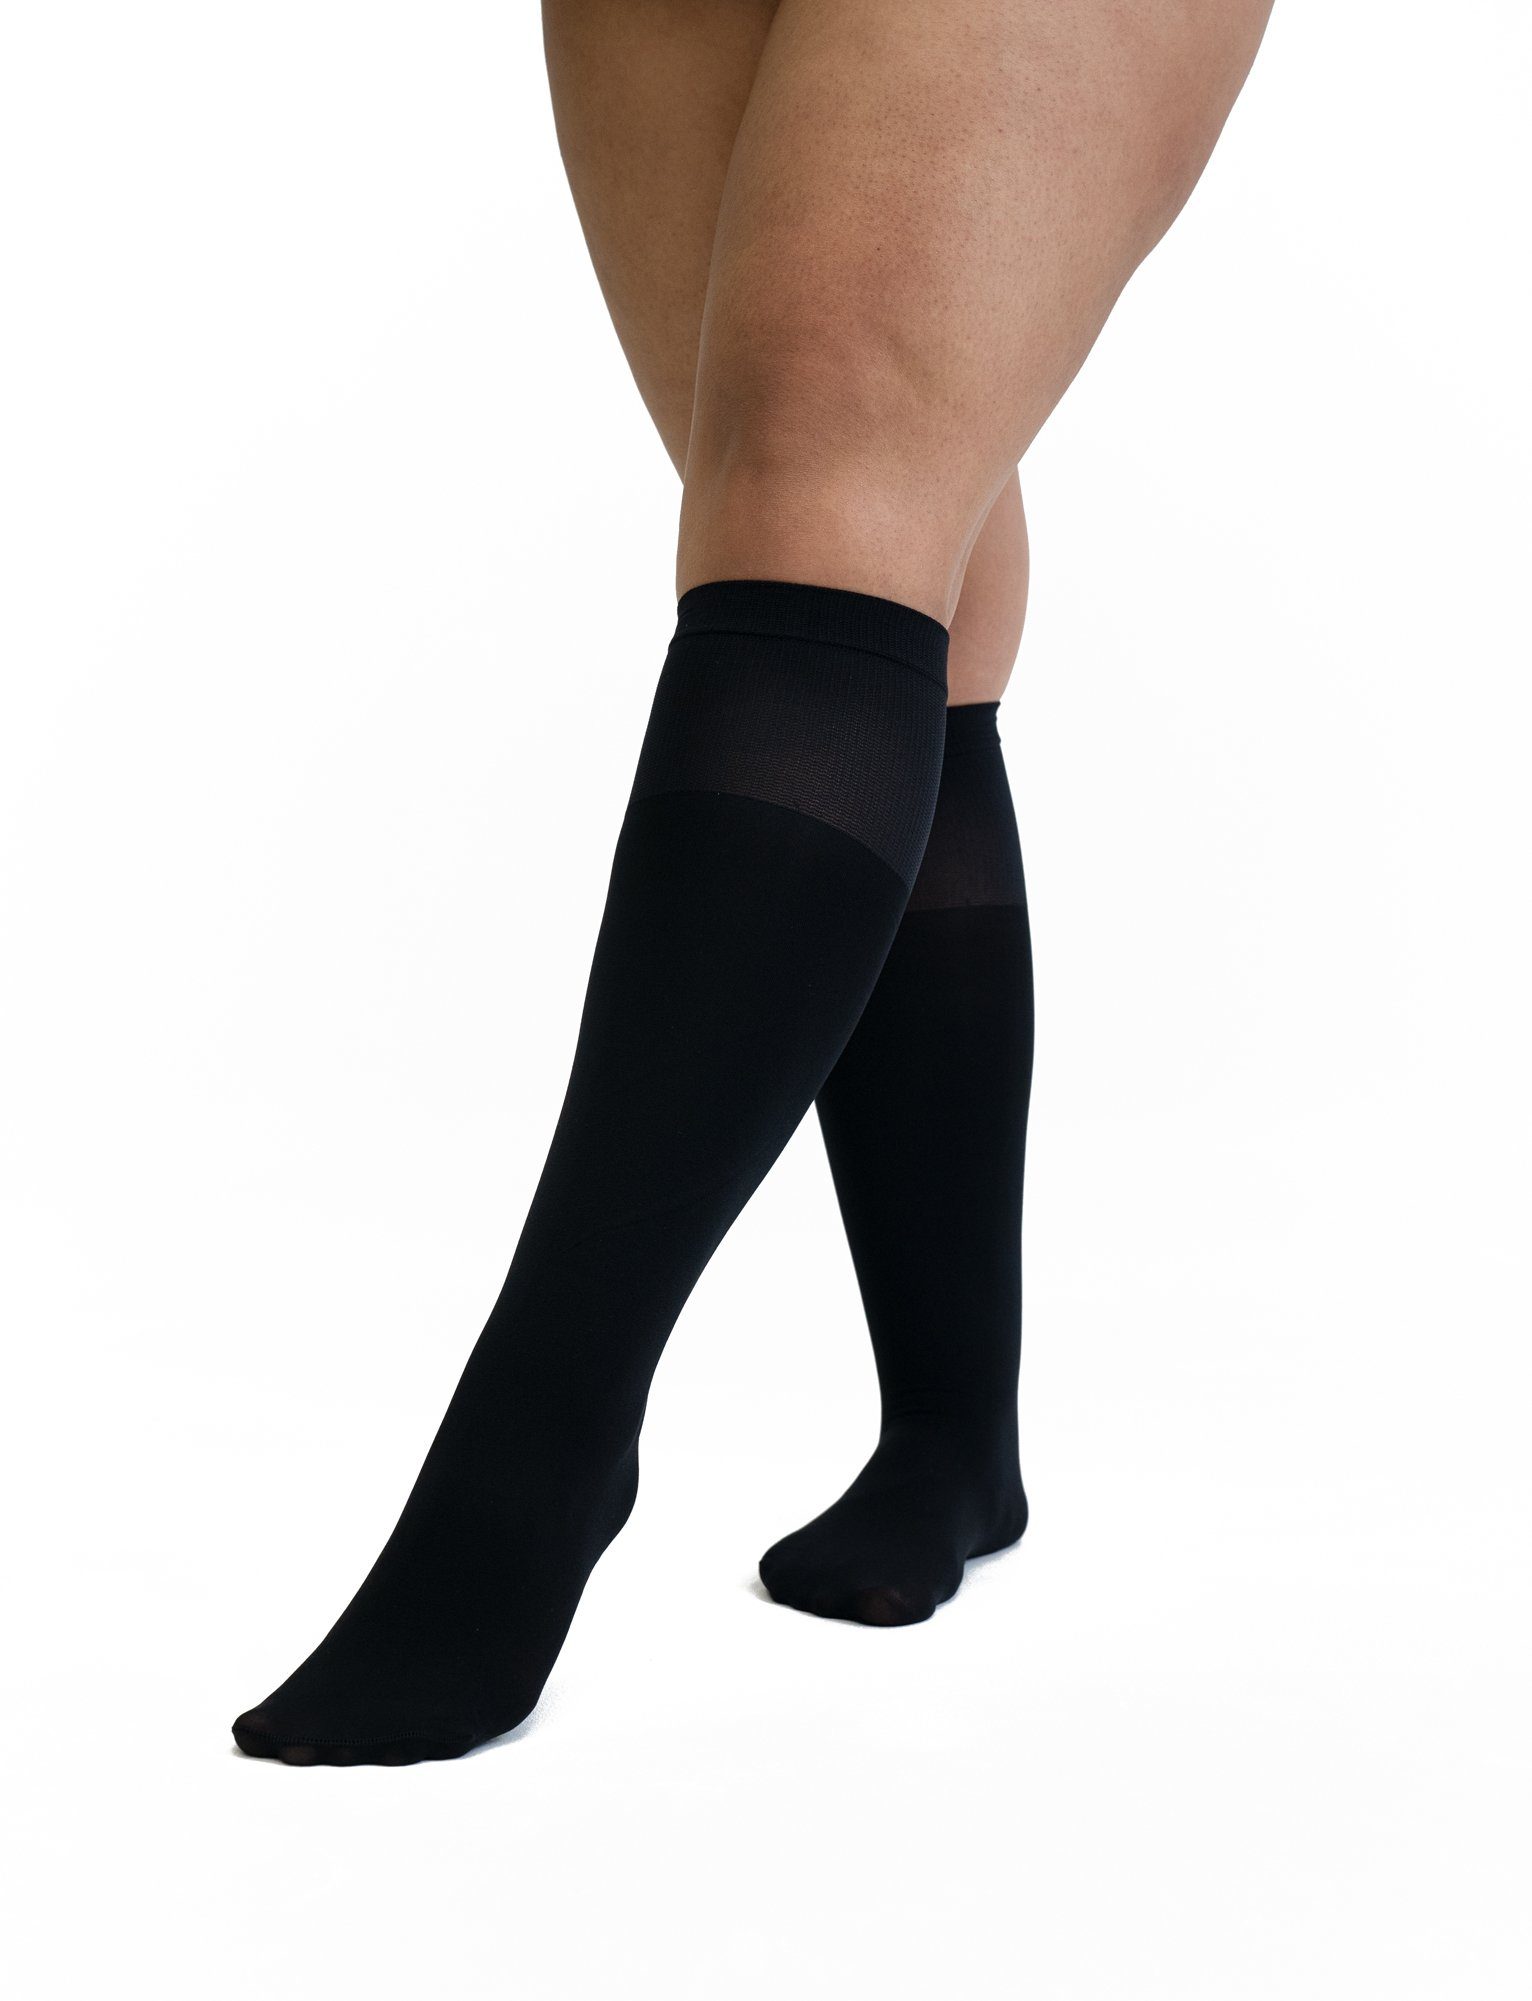 disée Socken 4675610000_2 disée Damen Knee-High Feinkniestrumpf flexibel semi blickdicht 60 DEN mit Komfortbund, Ultrasoft